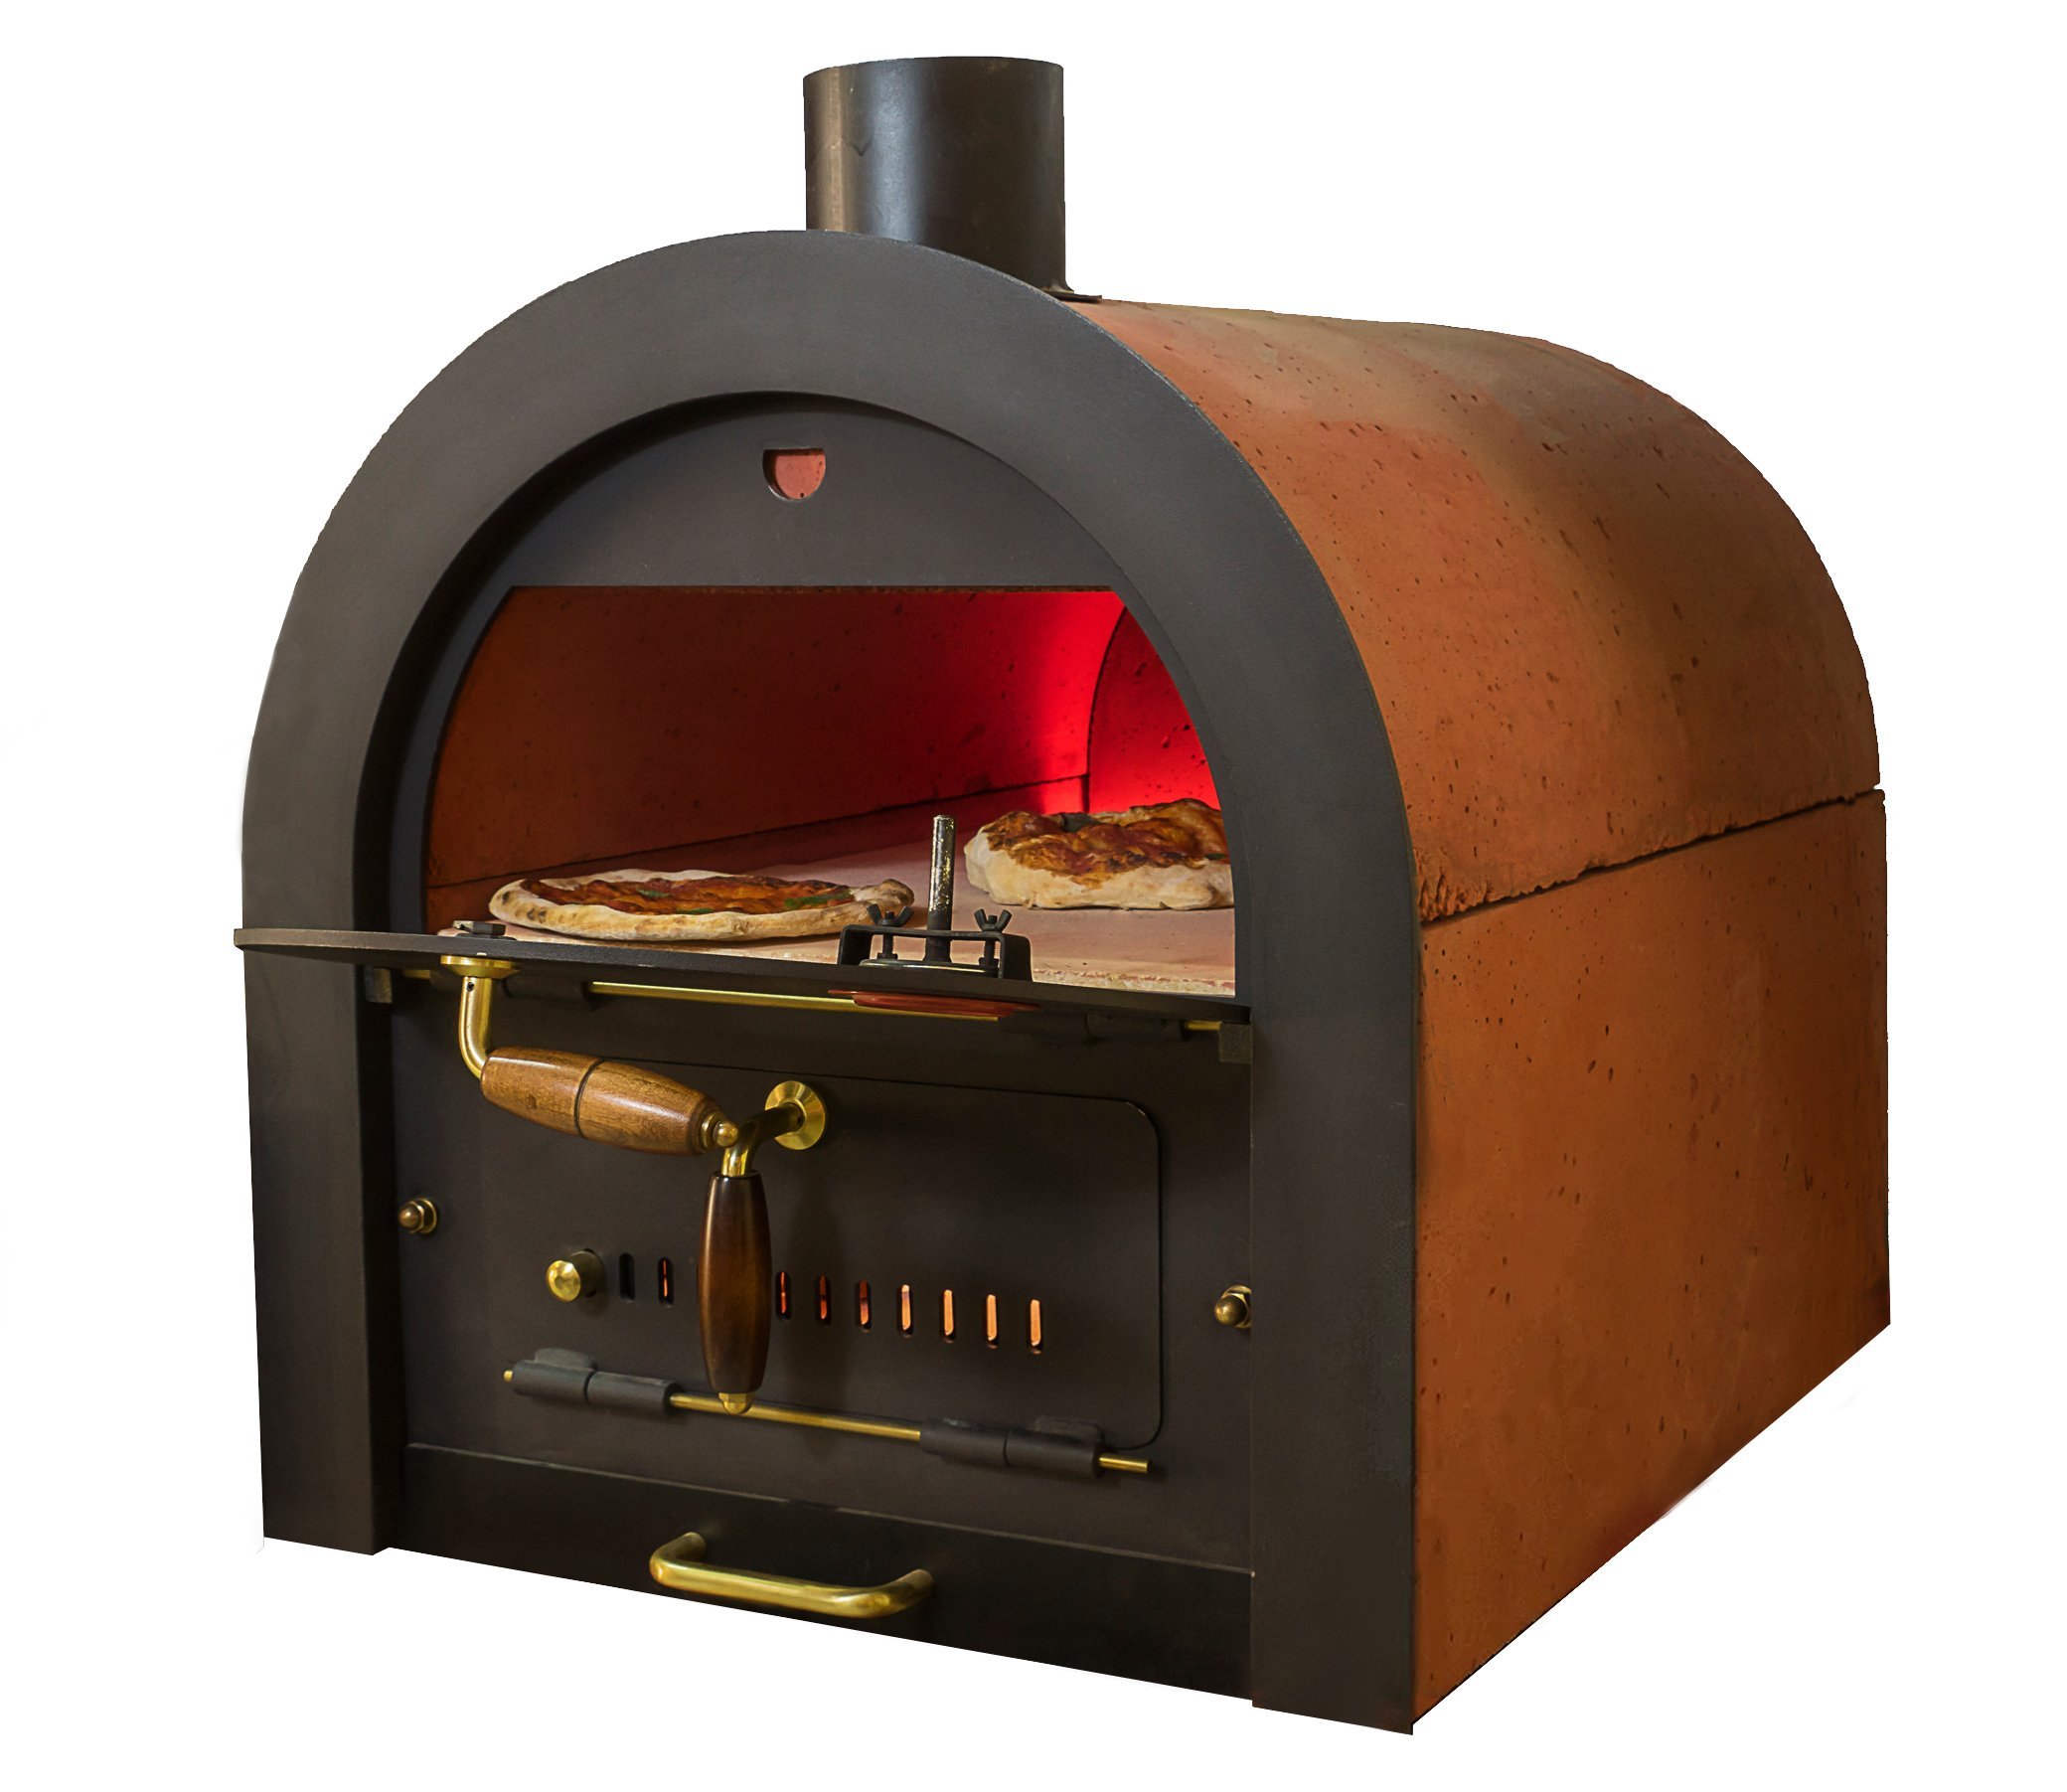 Bausatz für Pizza- & Holzbackofen mit indirekter Befeuerung, Valoriani, 40x60cm Backfläche